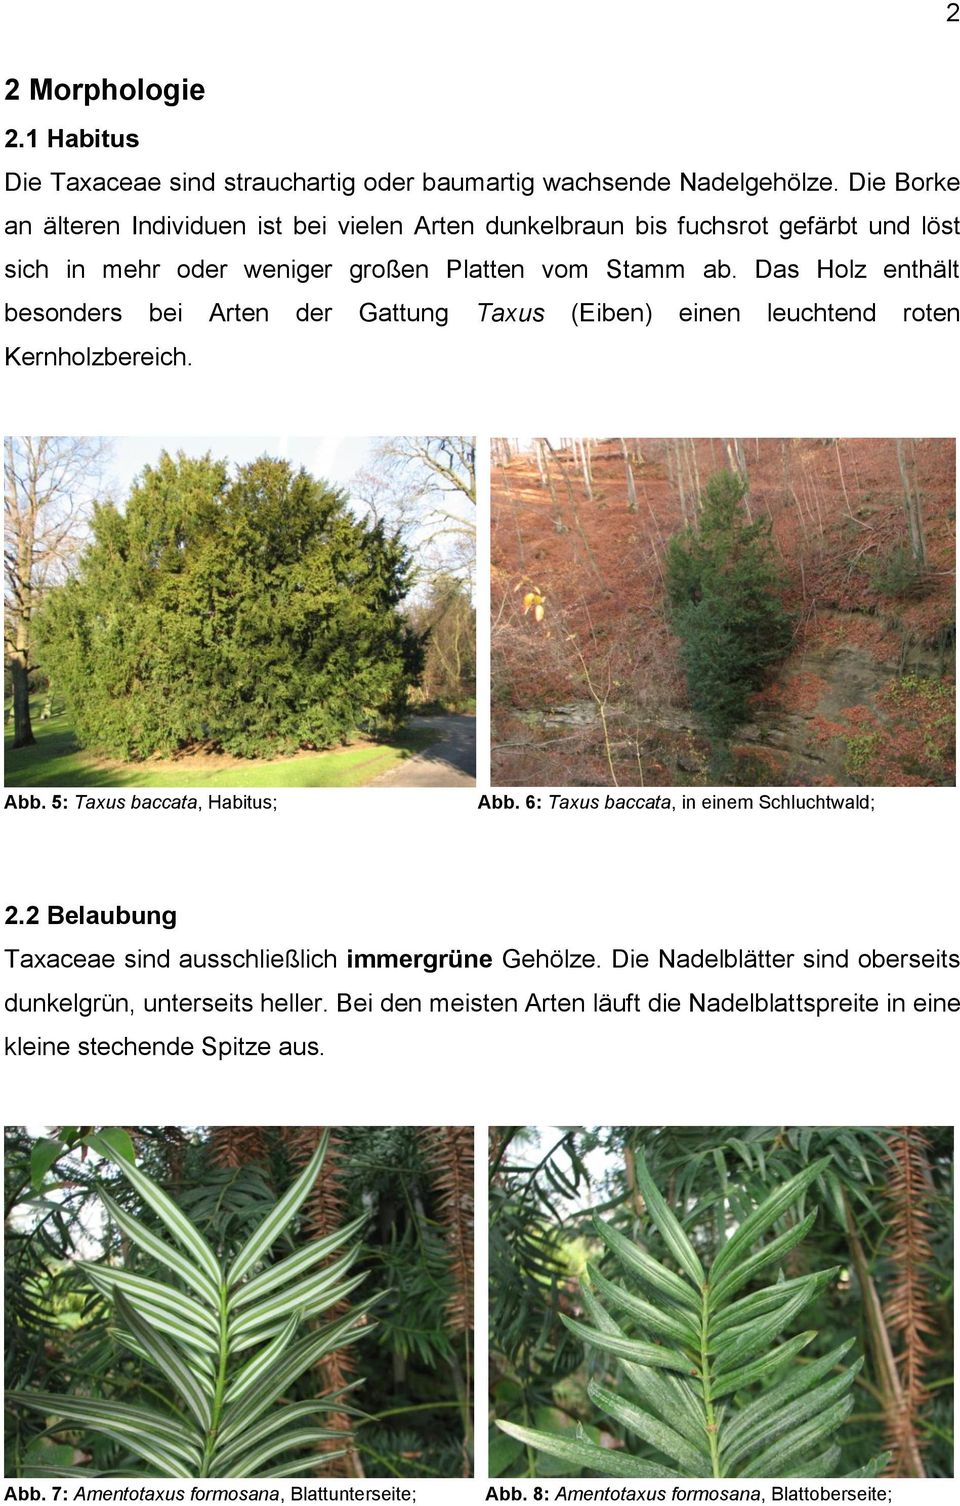 Das Holz enthält besonders bei Arten der Gattung Taxus (Eiben) einen leuchtend roten Kernholzbereich. Abb. 5: Taxus baccata, Habitus; Abb. 6: Taxus baccata, in einem Schluchtwald; 2.